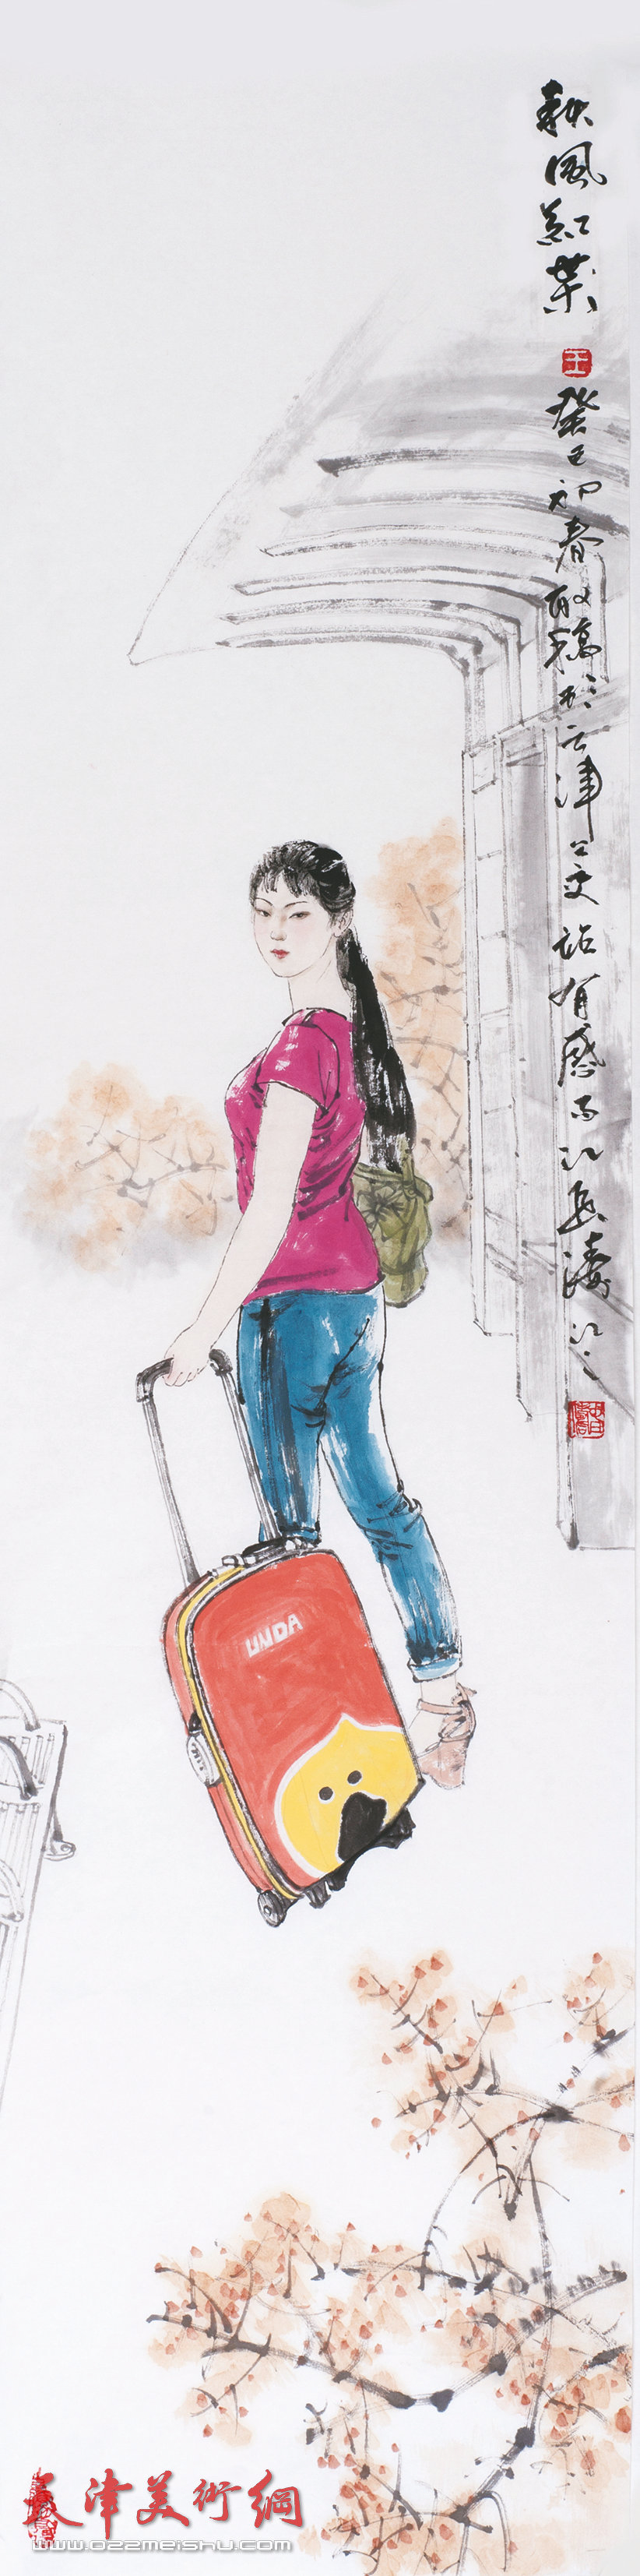 王春涛画展在齐鲁大地展津派画家风采，图为展出的王春涛新作《秋风红叶》